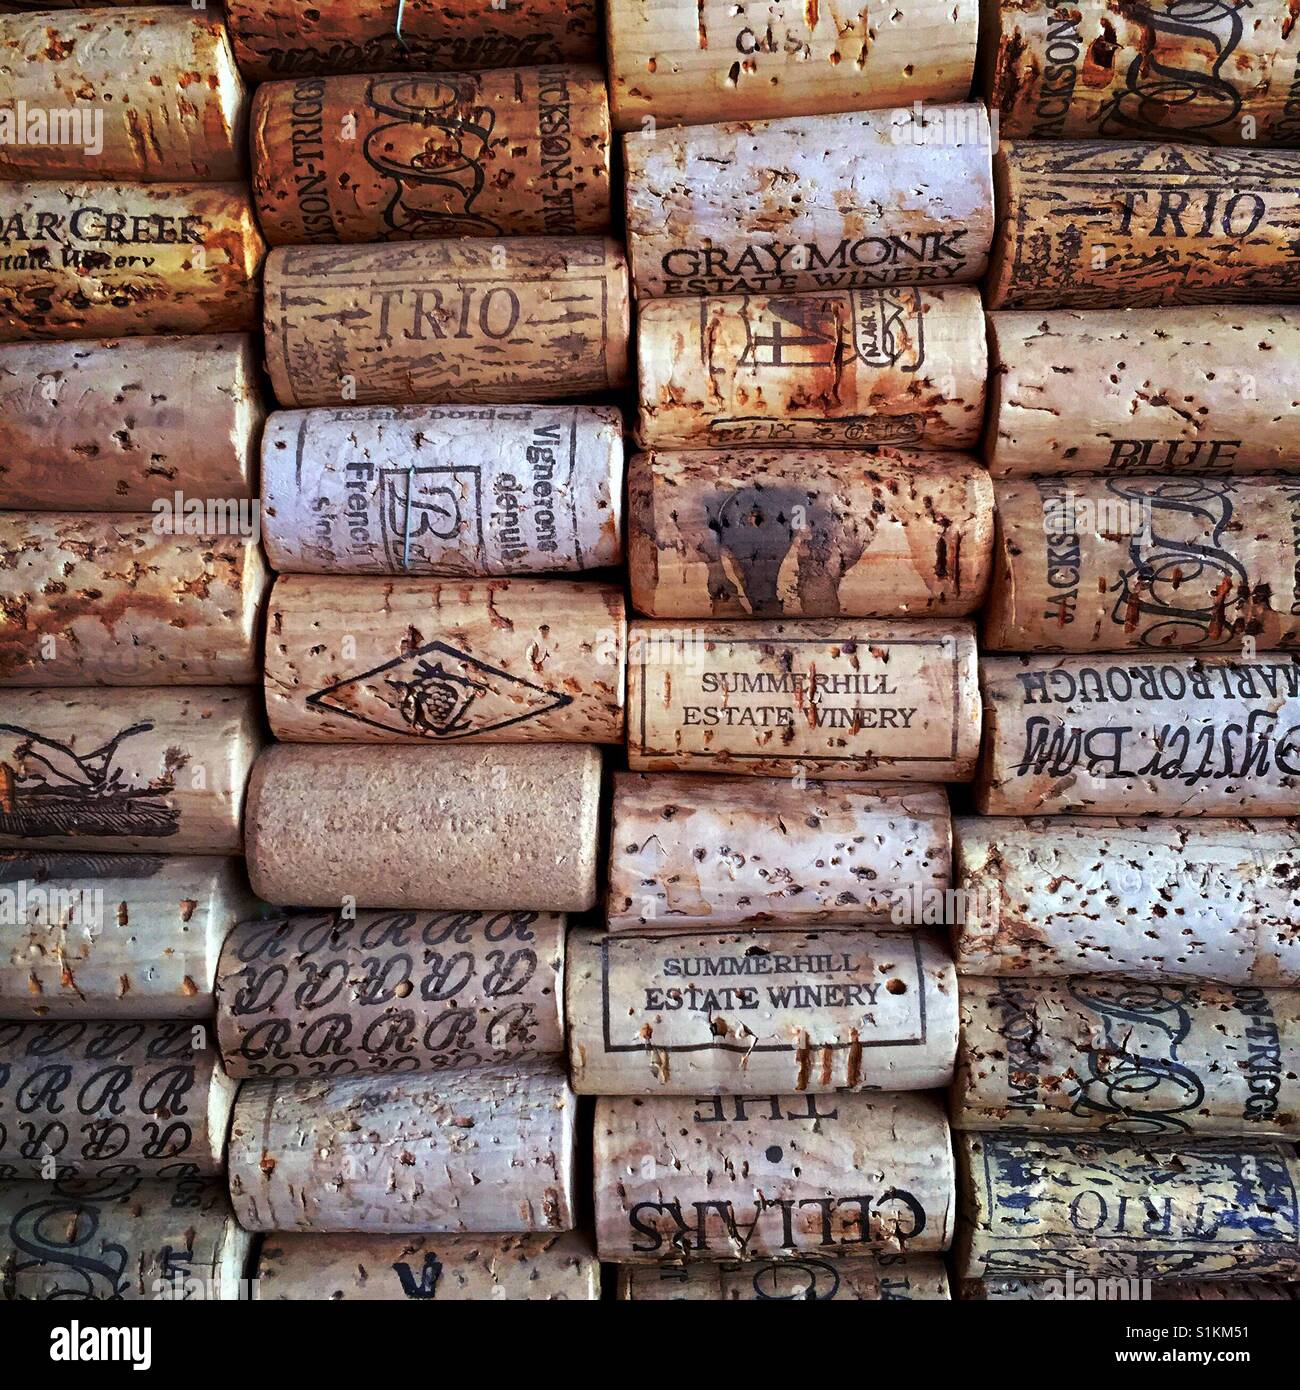 Un babillard fabriqués à partir de matière recyclée wine corks Banque D'Images